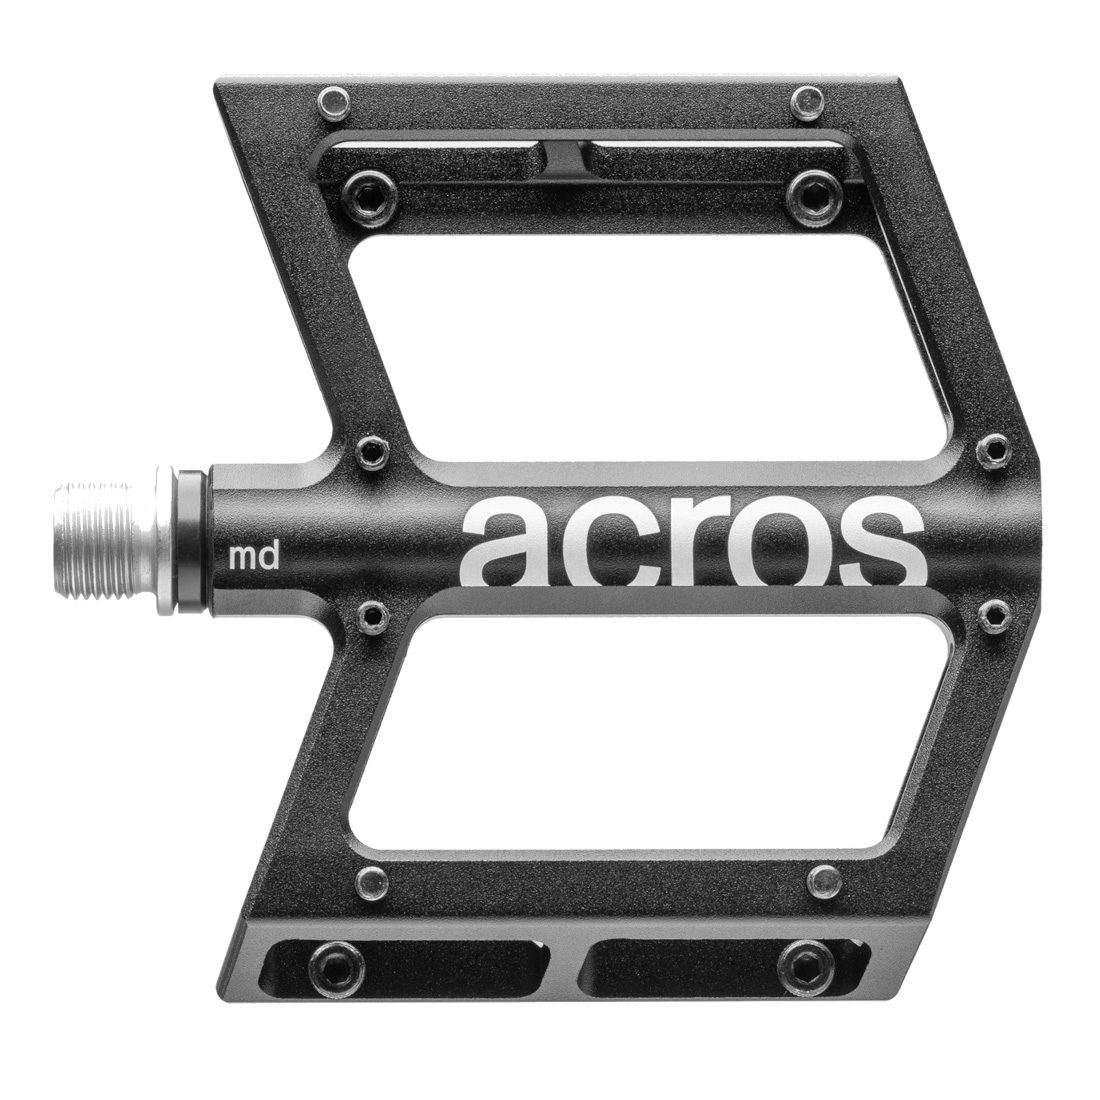 Produktbild von ACROS MD-Pedal - schwarz